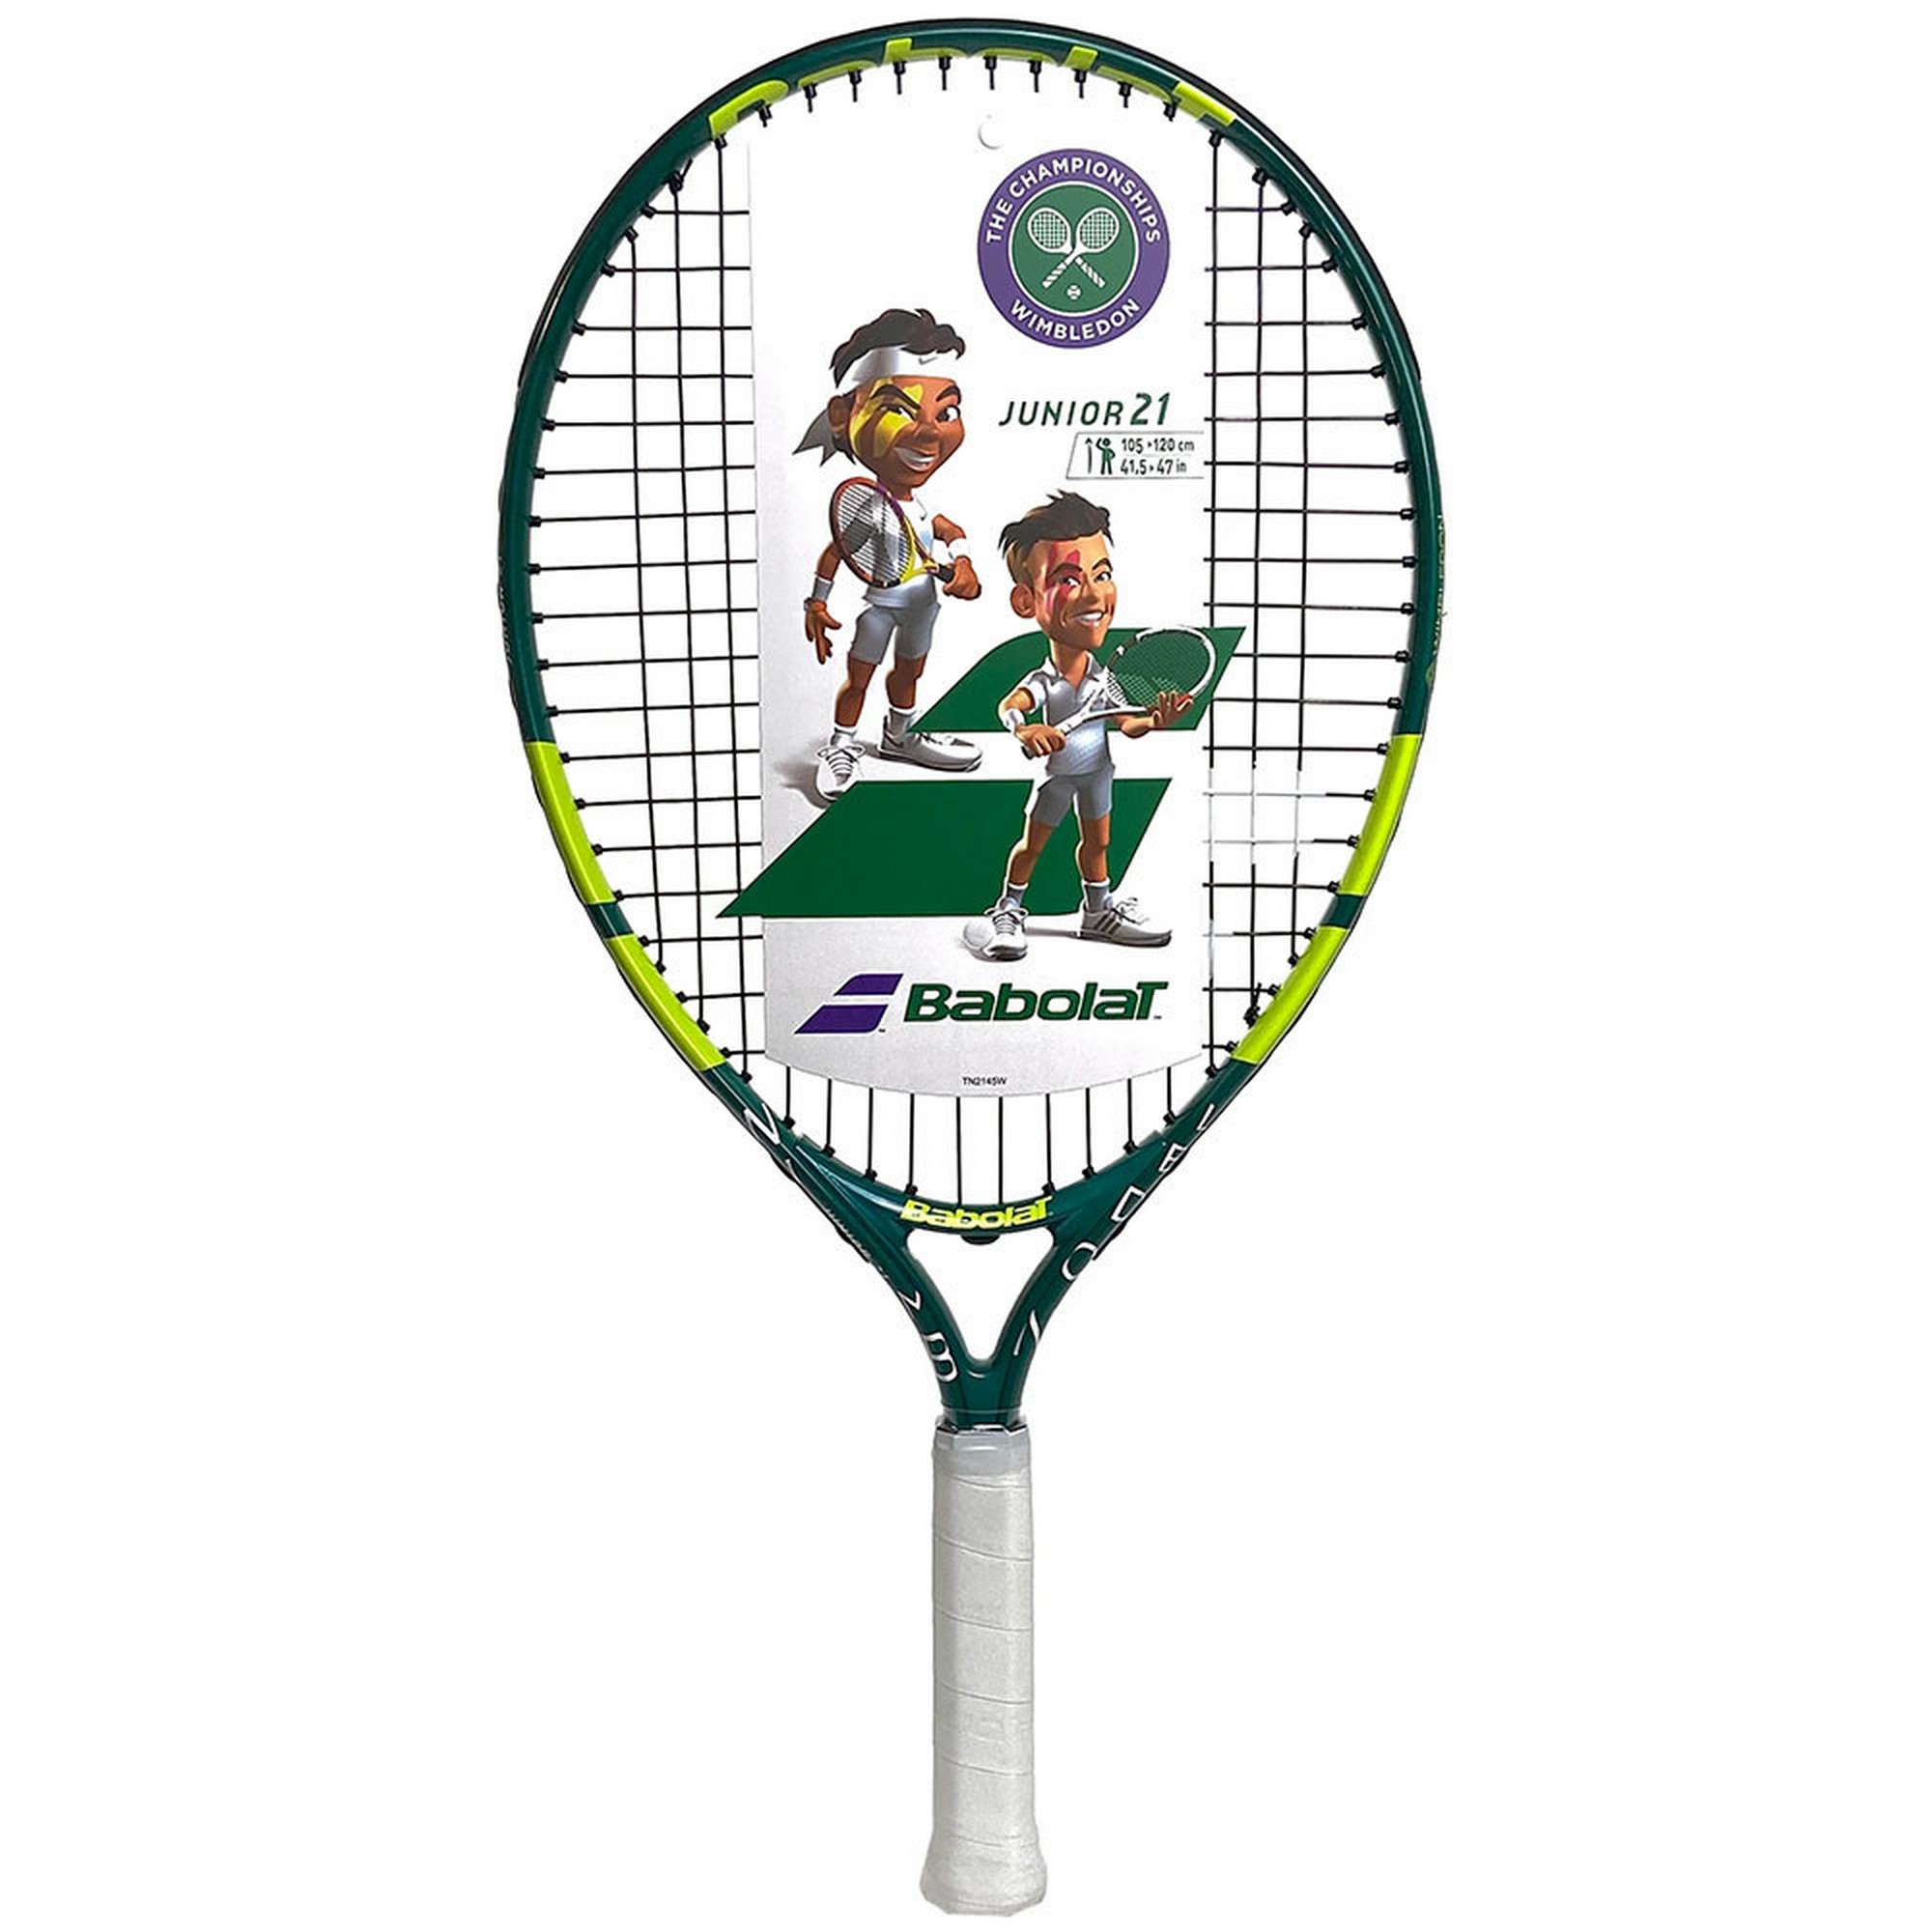 фото Ракетка для большого тенниса детская 5-7 лет babolat wimbledon junior 21 gr000 140448 зелено-салатовый